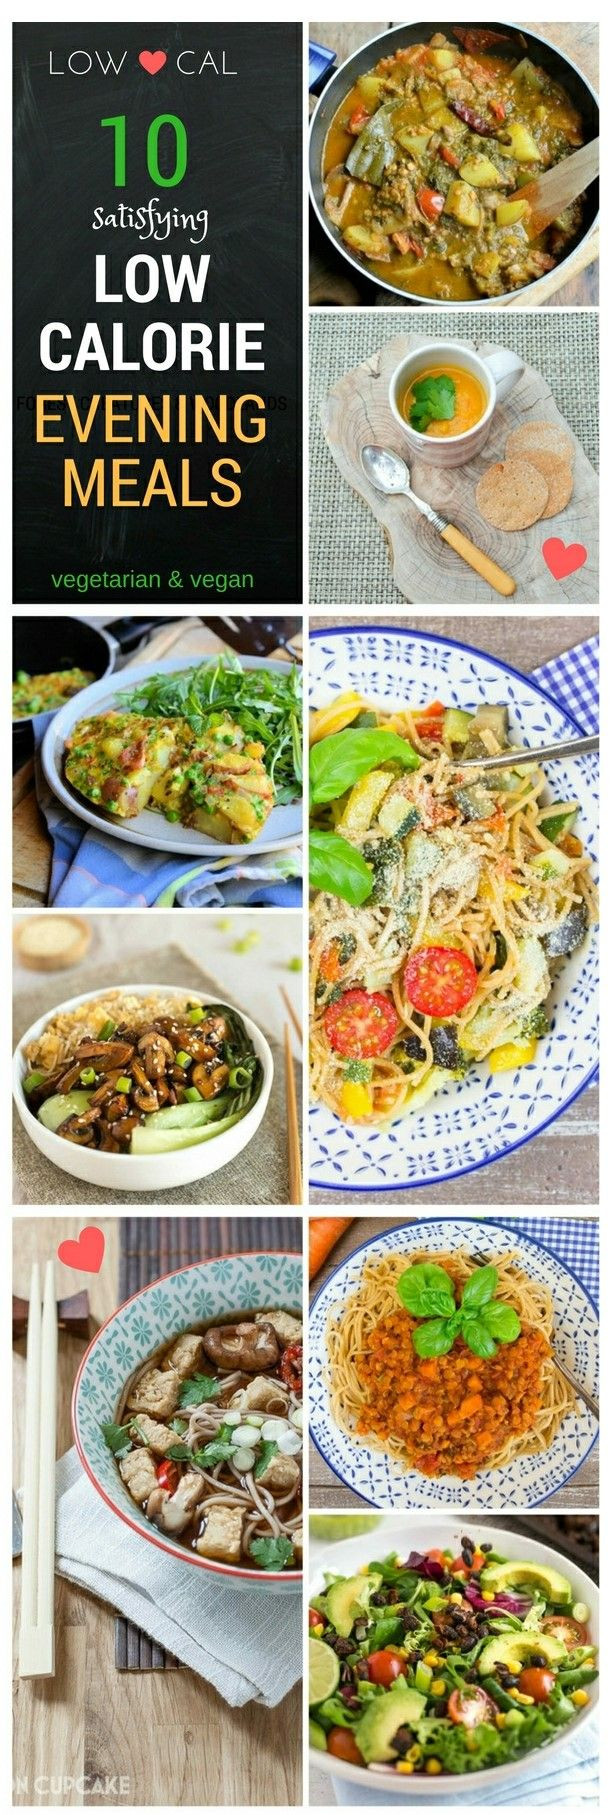 Low Calorie Tofu Recipes
 25 best ideas about Low calorie vegan on Pinterest